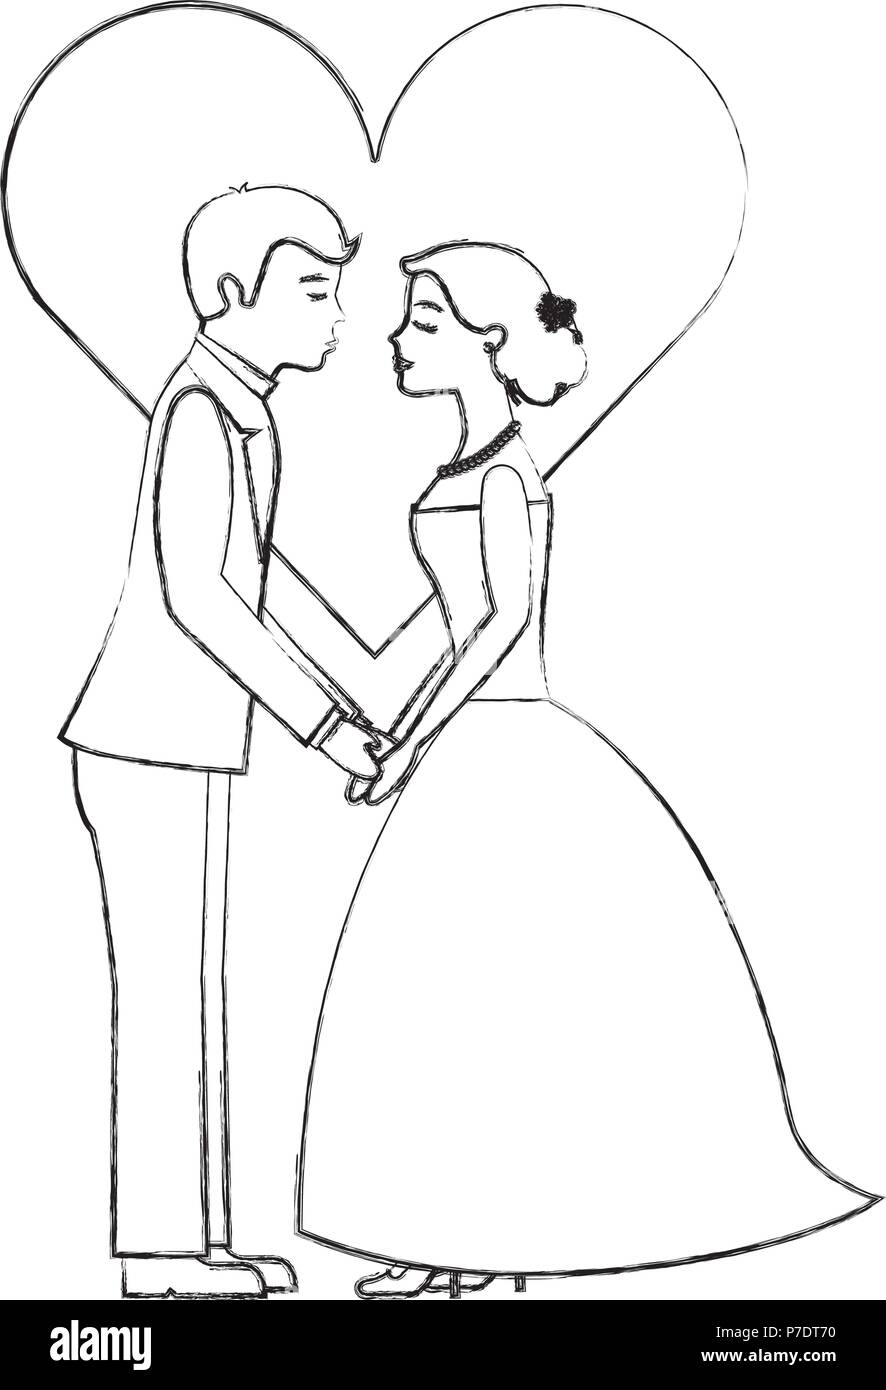 Cartoon Short Story: Marriage Humor • JOANA MIRANDA STUDIO